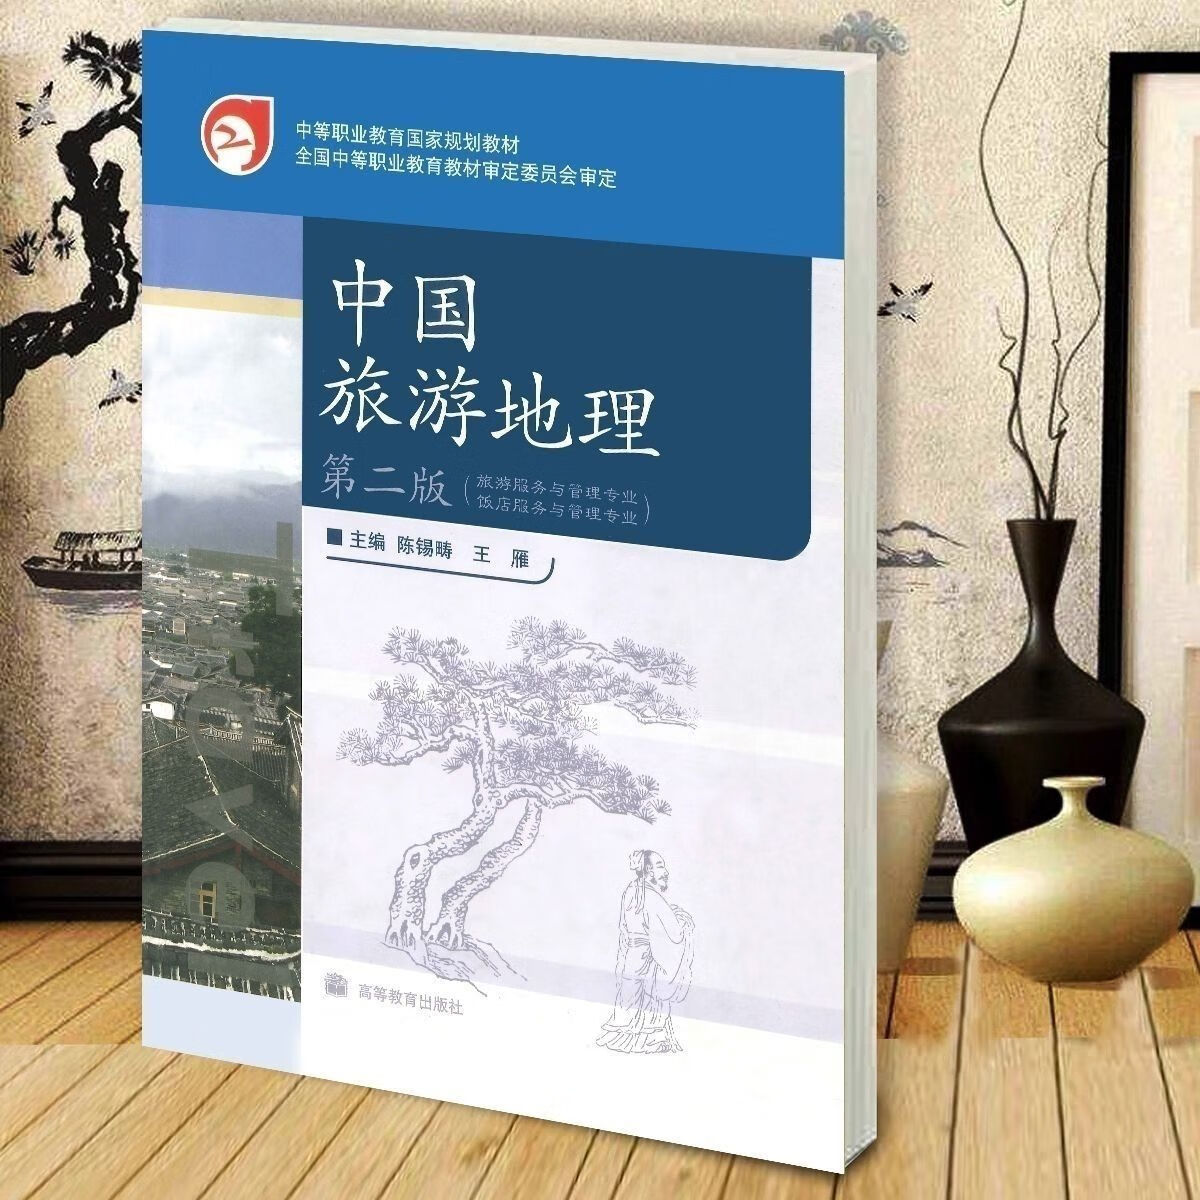 中国旅游地理(第二版)陈锡畴 中国旅游资源概述与赏析书籍